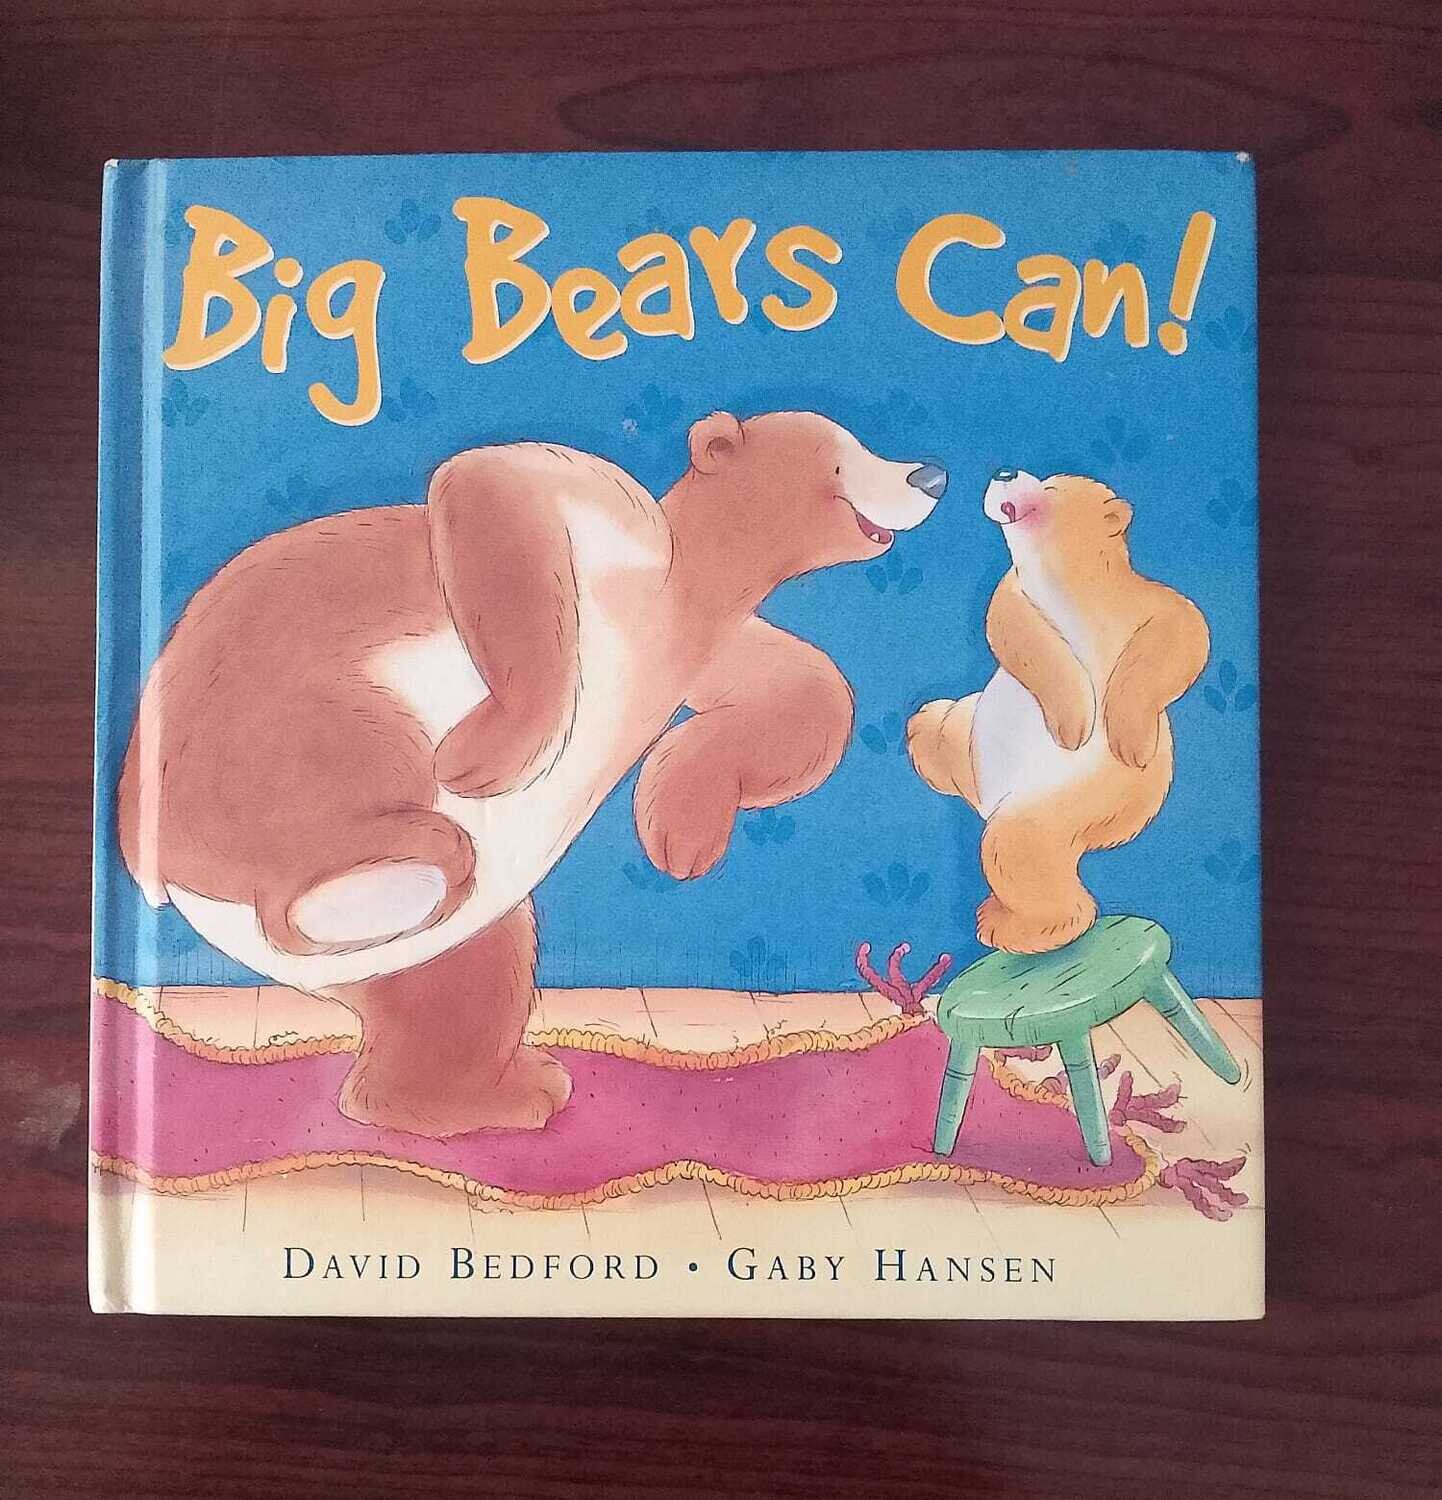 Big bears can